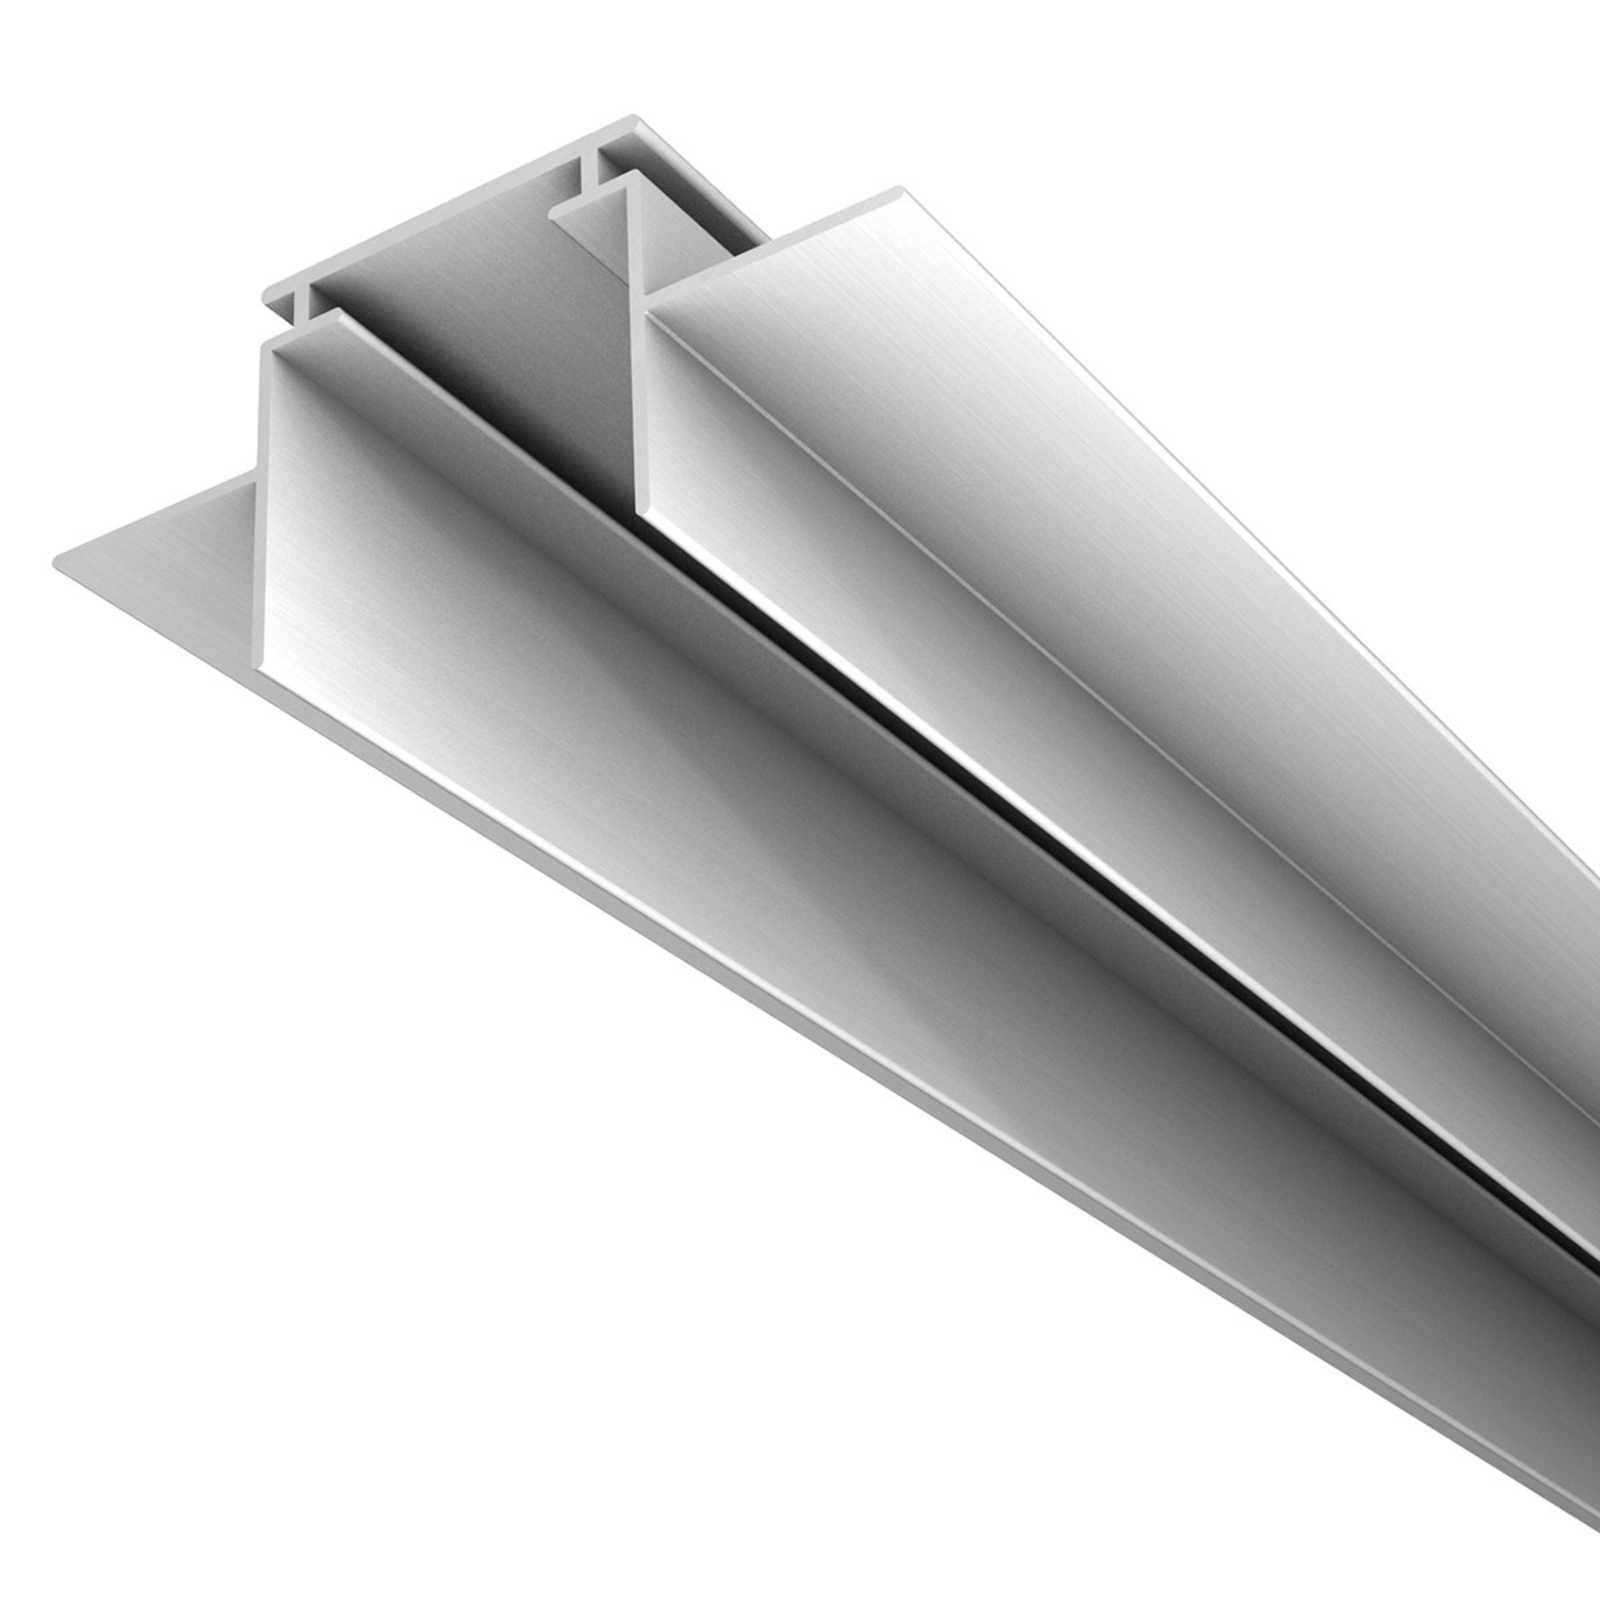 M28 LED aliuminio profilis 66 mm pločio atraminis profilis